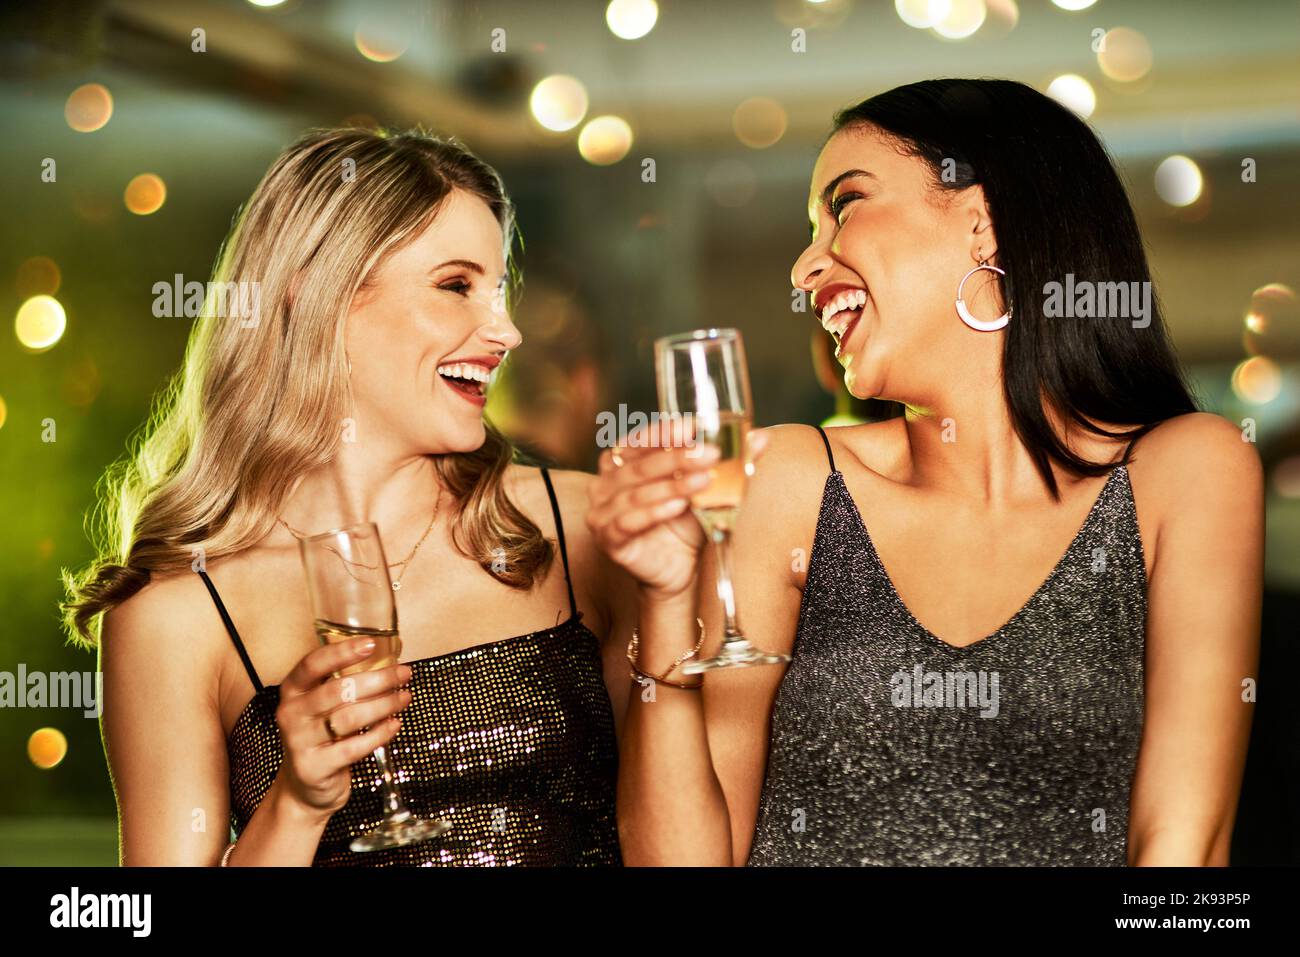 Wir können ewig jung sein. Zwei fröhliche junge Frauen, die abends auf der Tanzfläche eines Clubs einen Drink genießen. Stockfoto